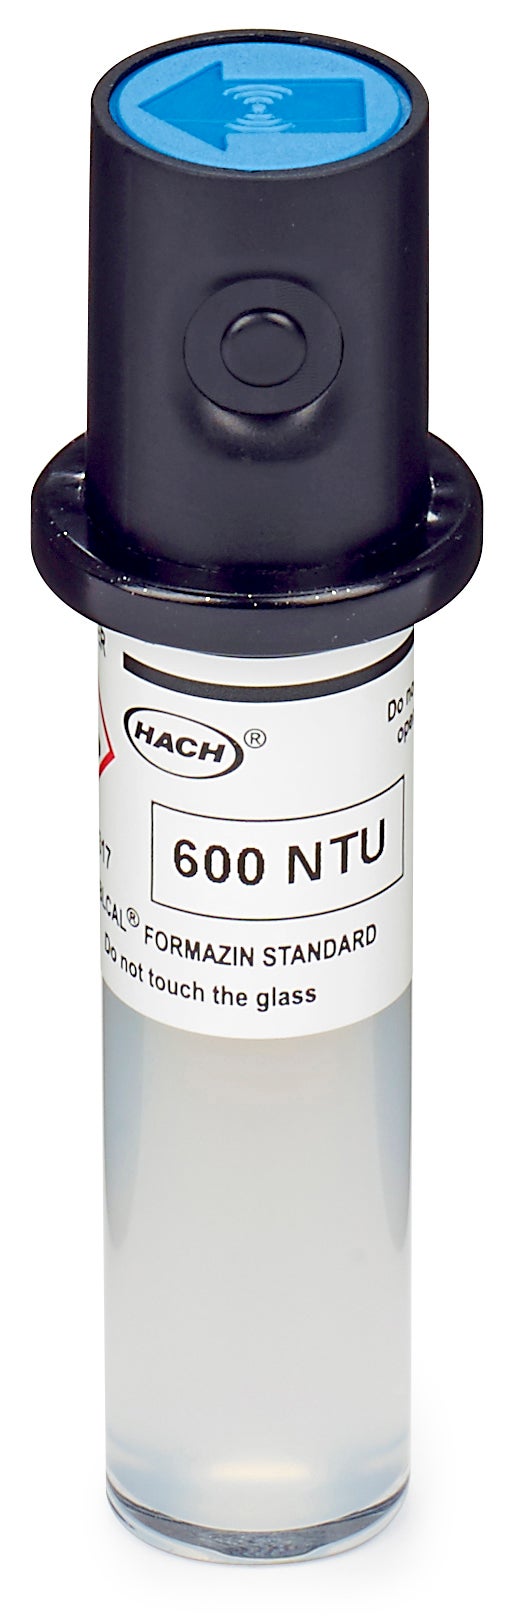 Kuweta do kalibracji Stablcal, 600 NTU, bez identyfikatora RFID do laserowych mierników mętności TU5200, TU5300sc i TU5400sc